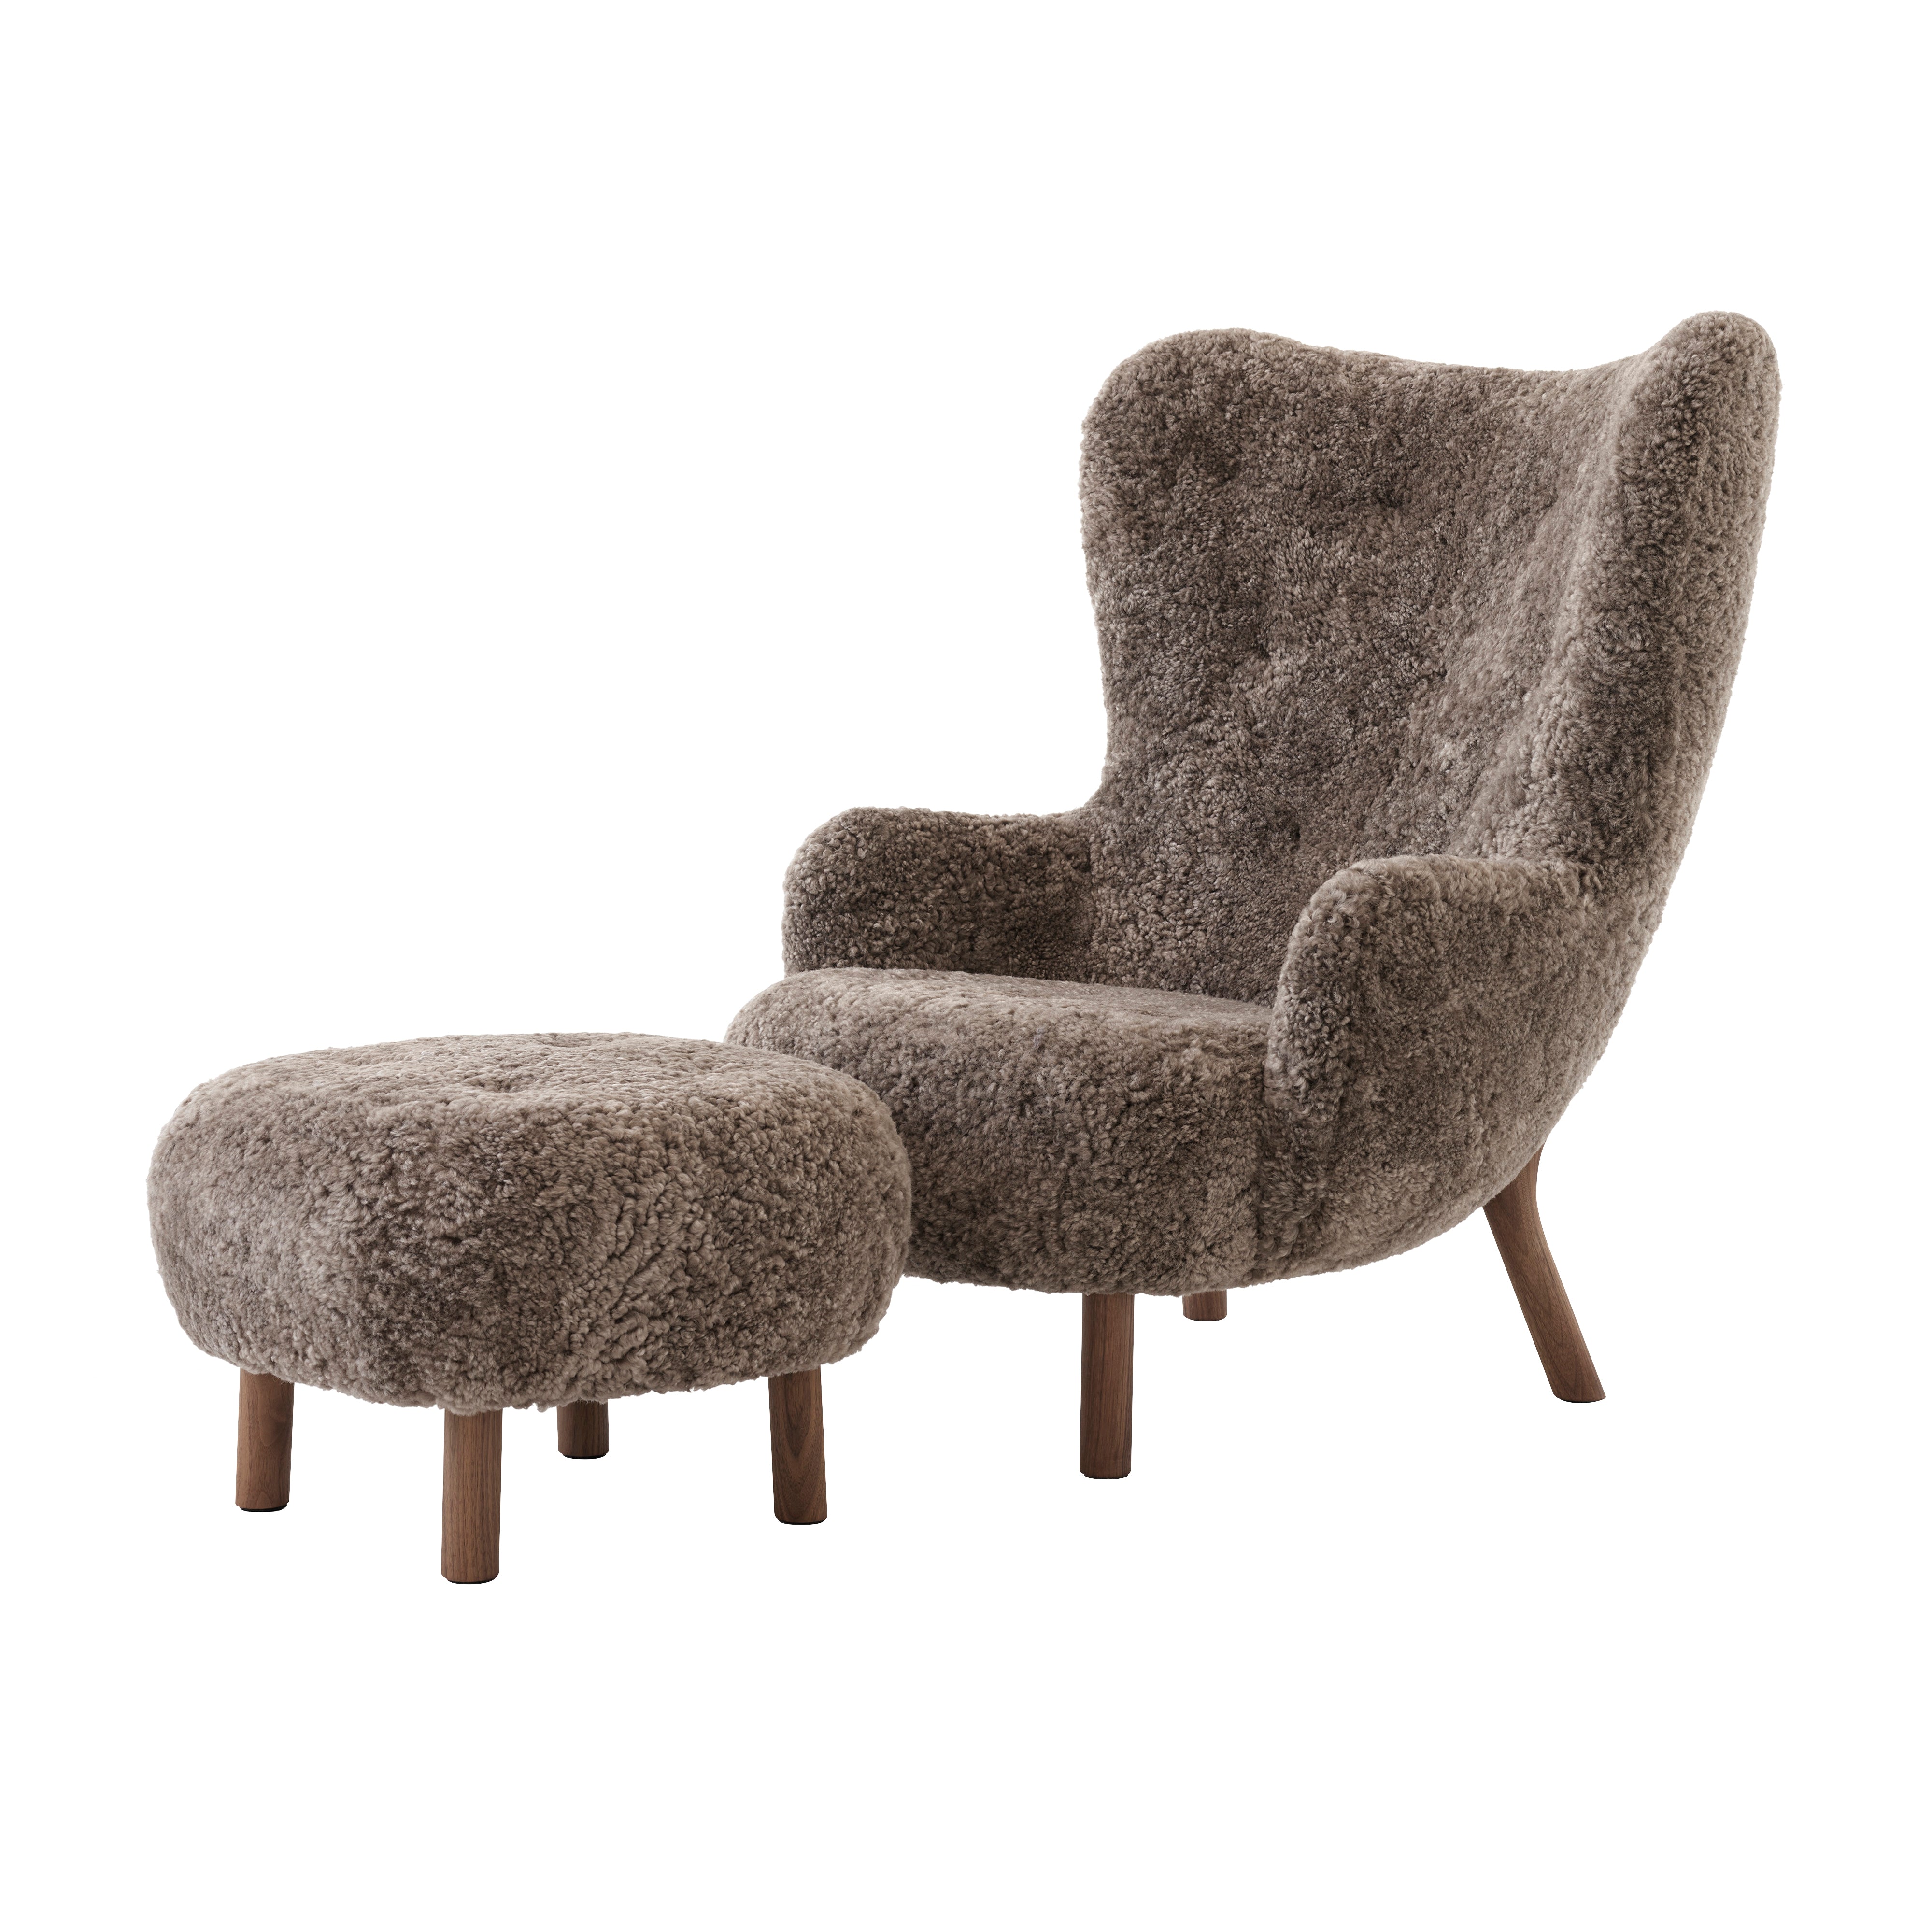 Petra Lounge Chair VB3 + Pouf ATD1: Oiled Walnut + Sheepskin Sahara